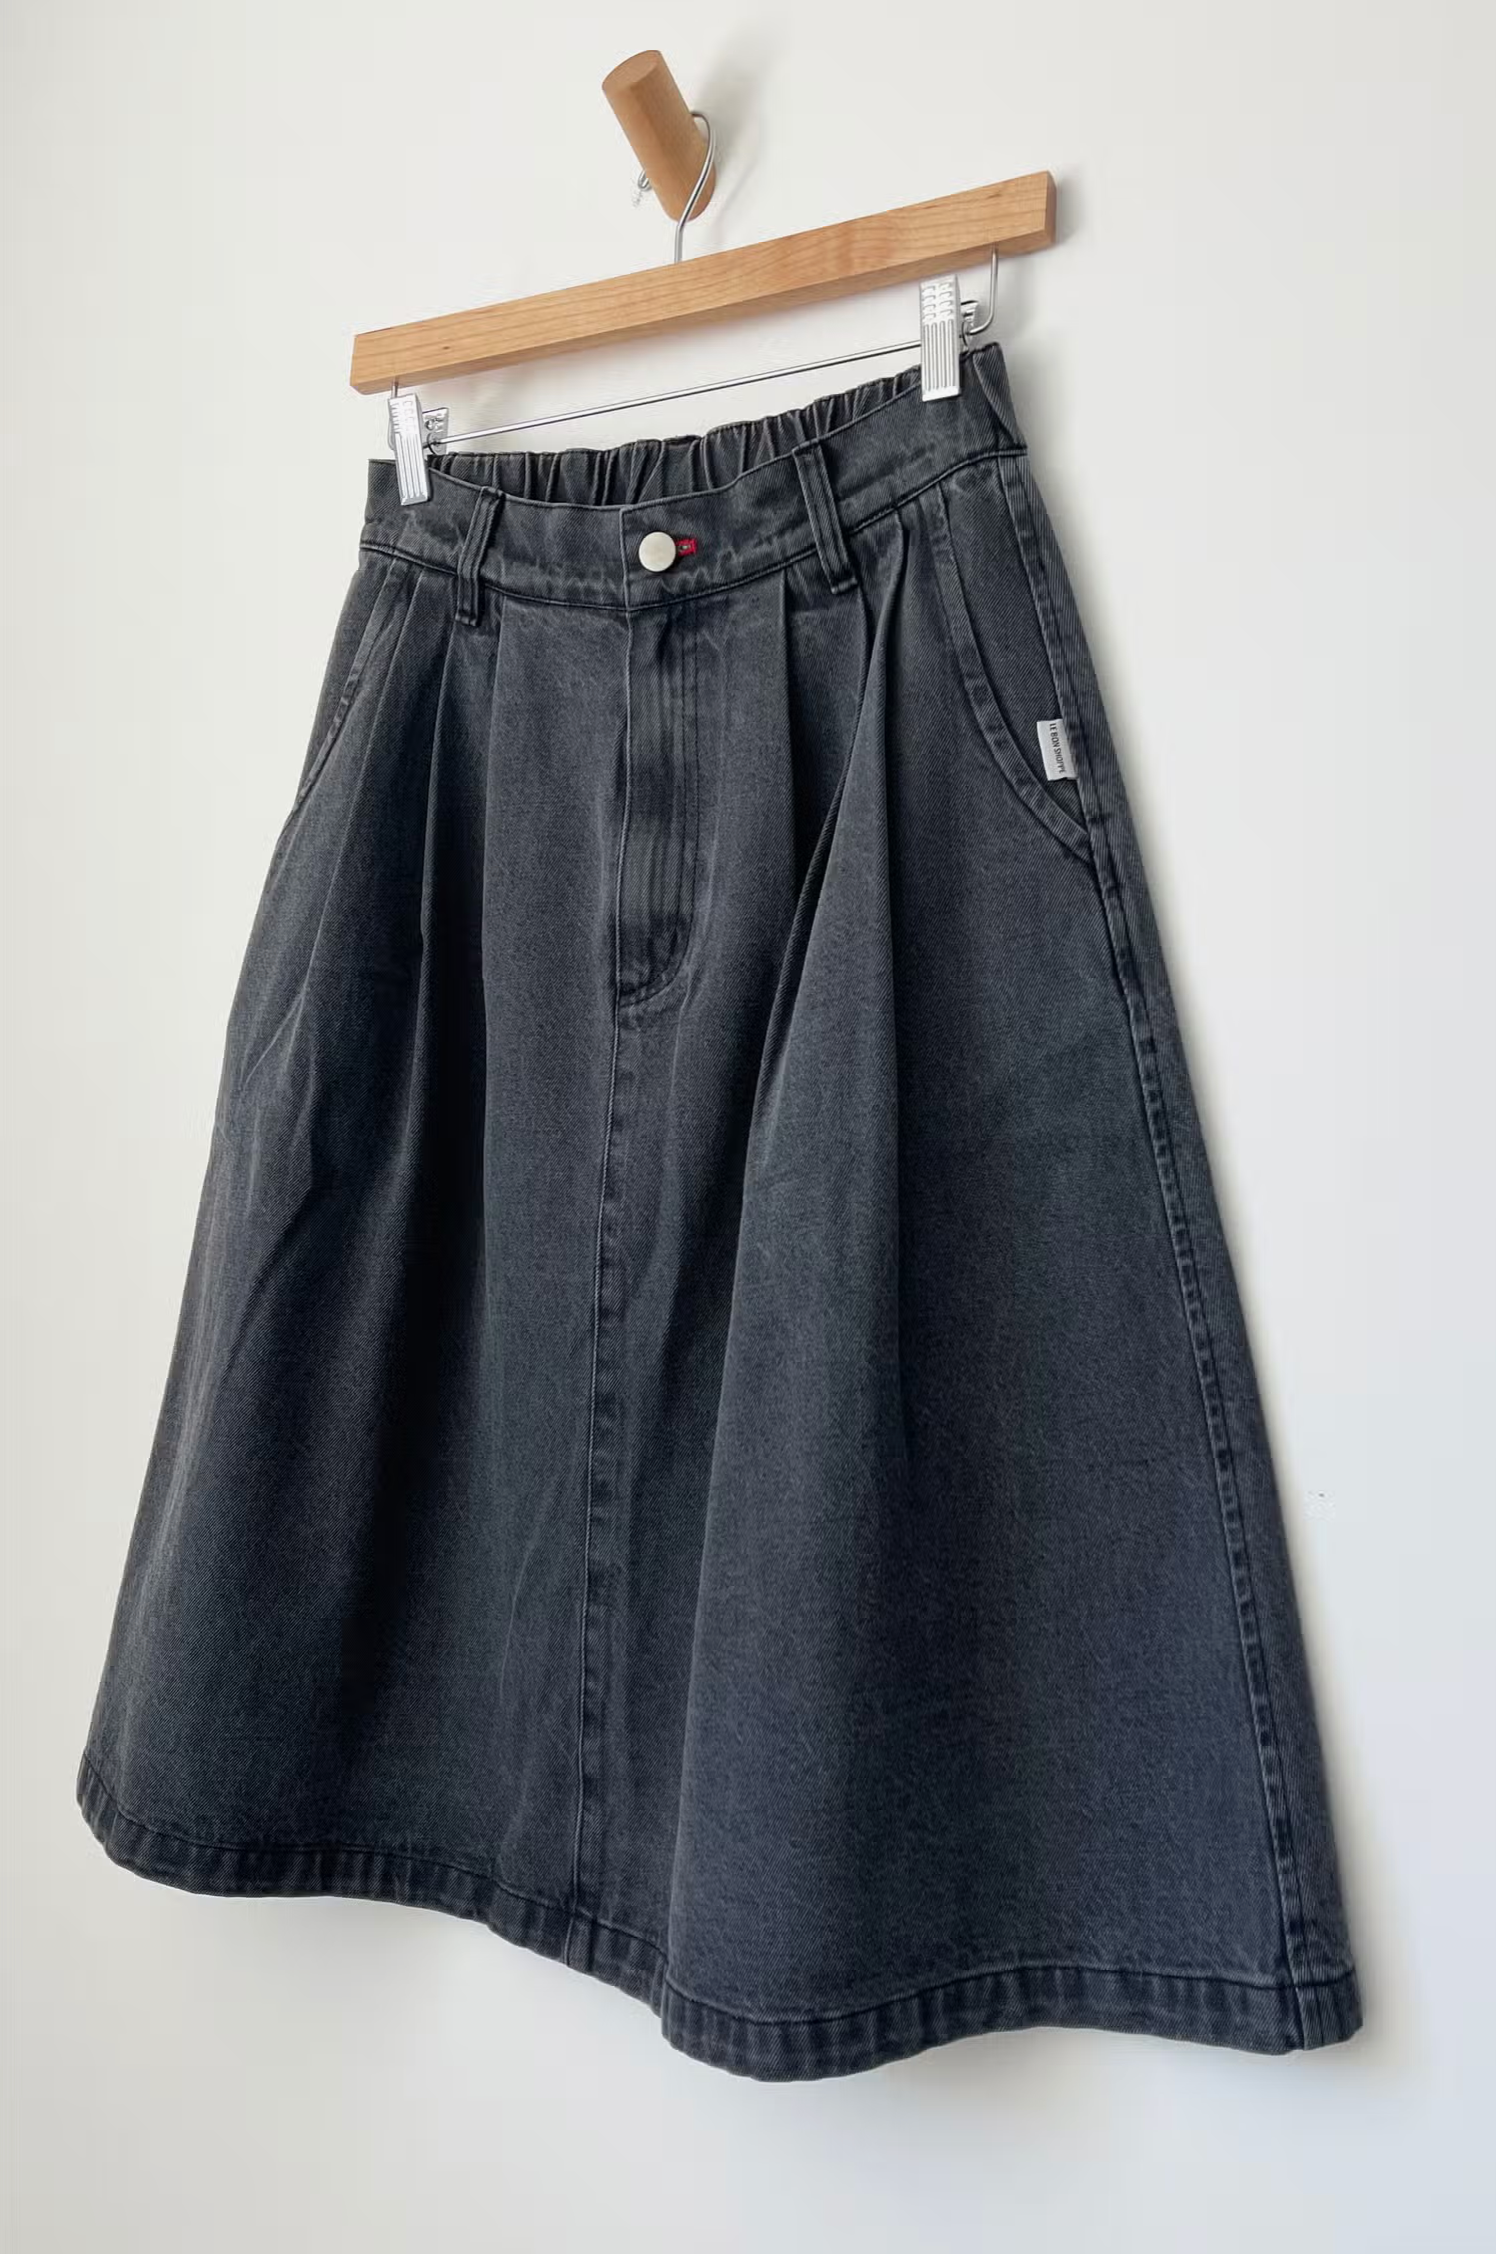 Farm Girl Skirt